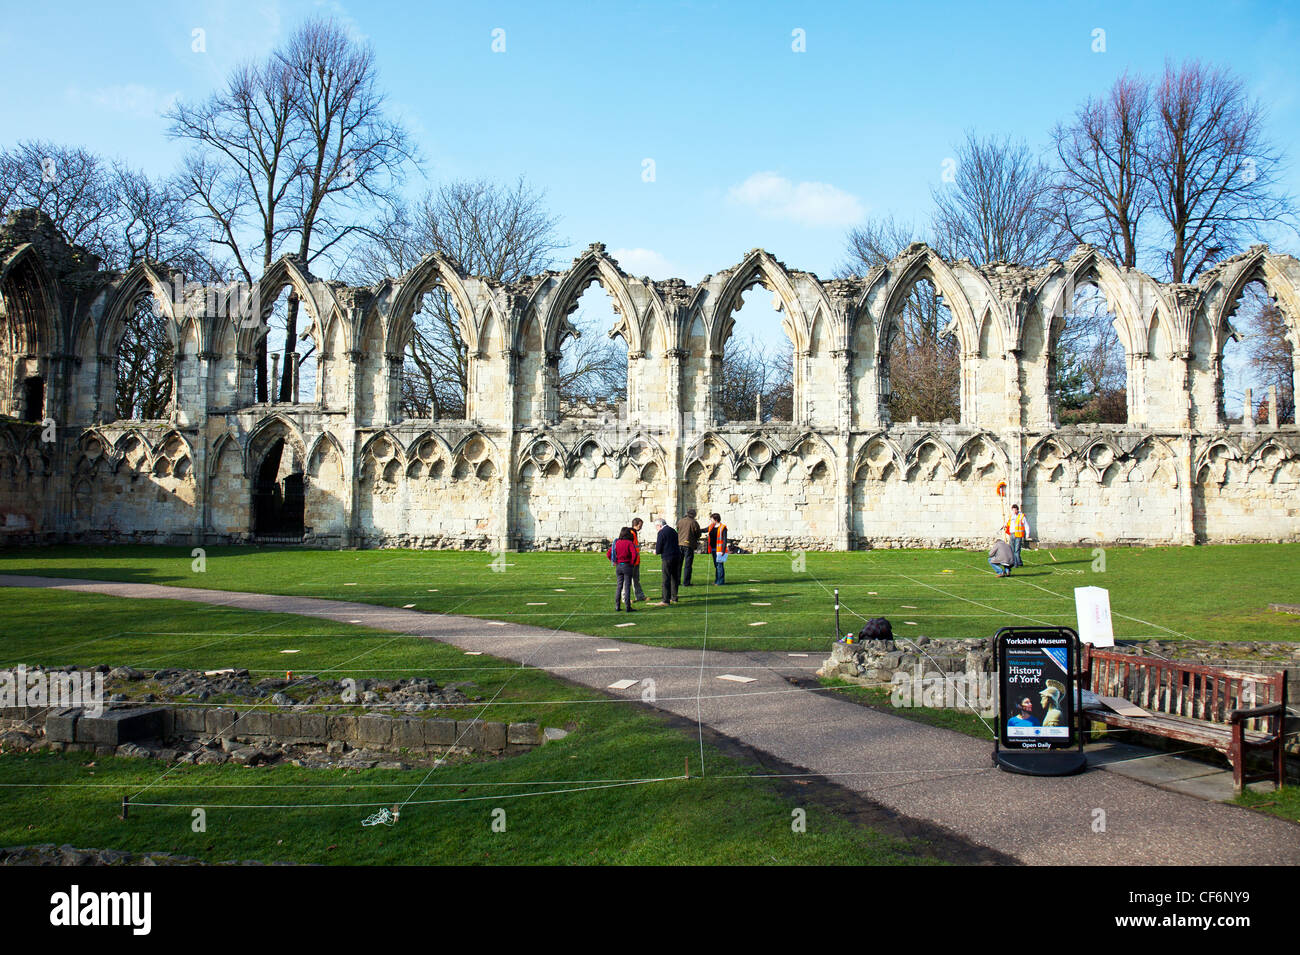 York City, Yorkshire, England bleibt der alten Abtei von St Mary in York eingerichtet als archäologische Grabung Website Quadrate markiert Stockfoto